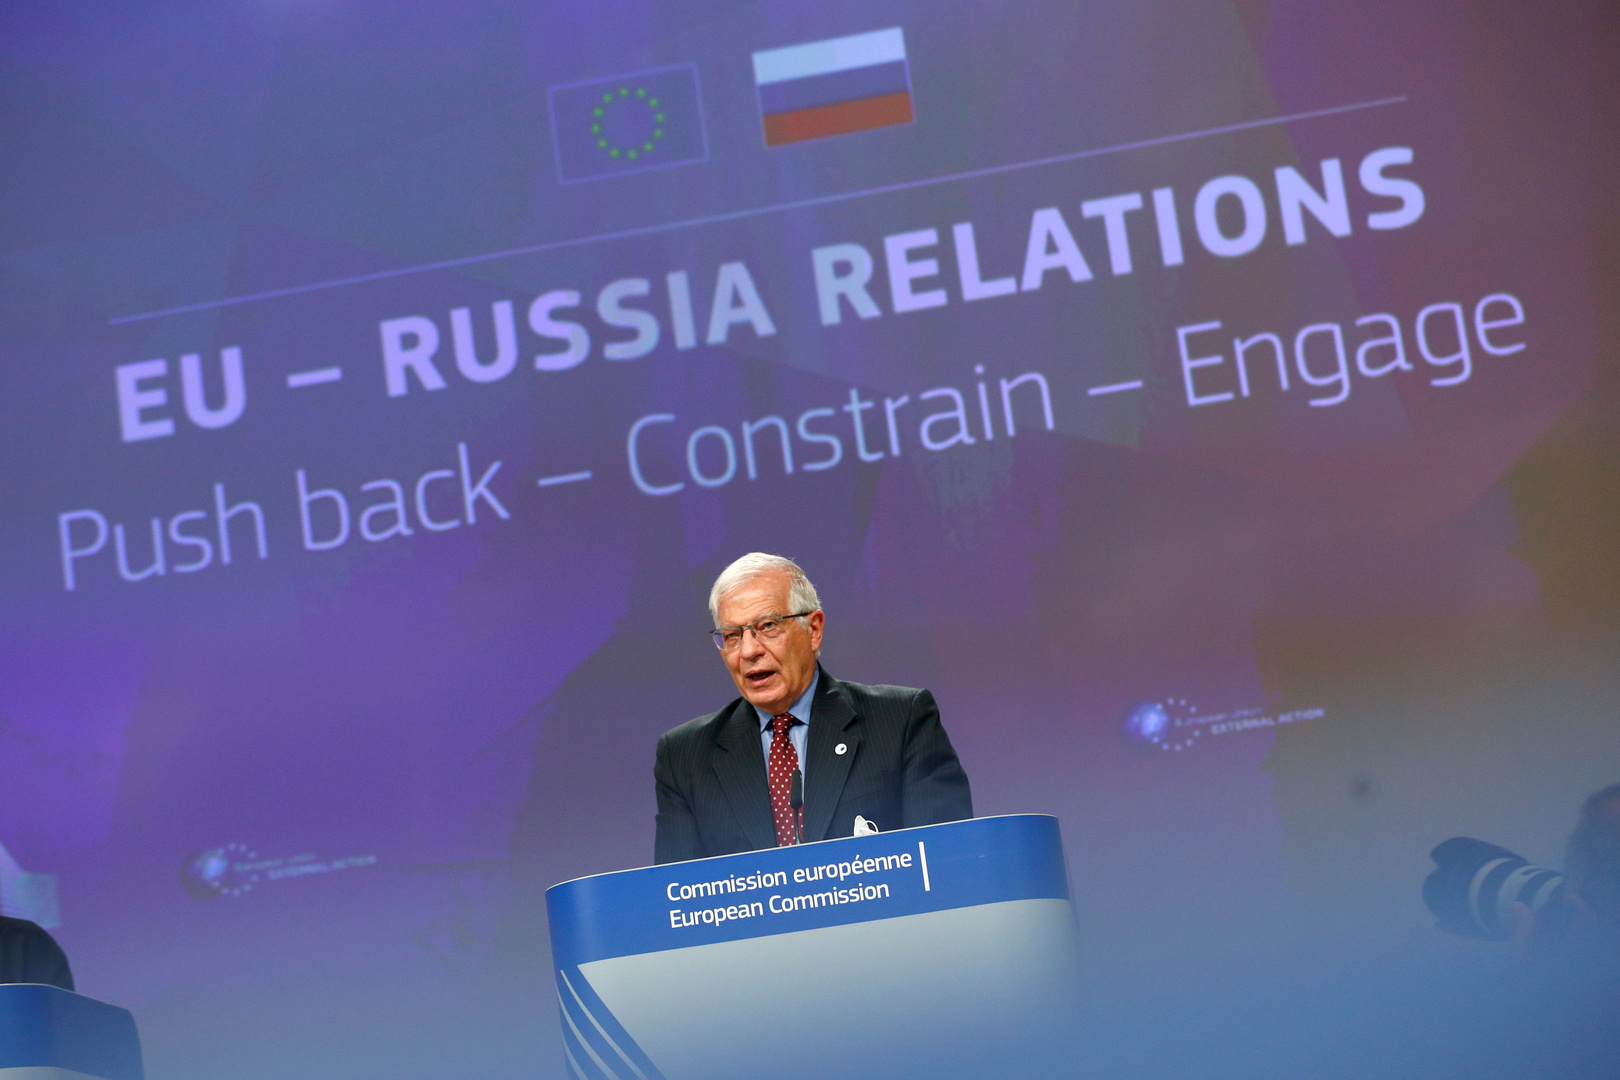 الاتحاد الأوروبي يكشف عن محاور استراتيجيته إزاء روسيا: التصدي، الردع، التعامل